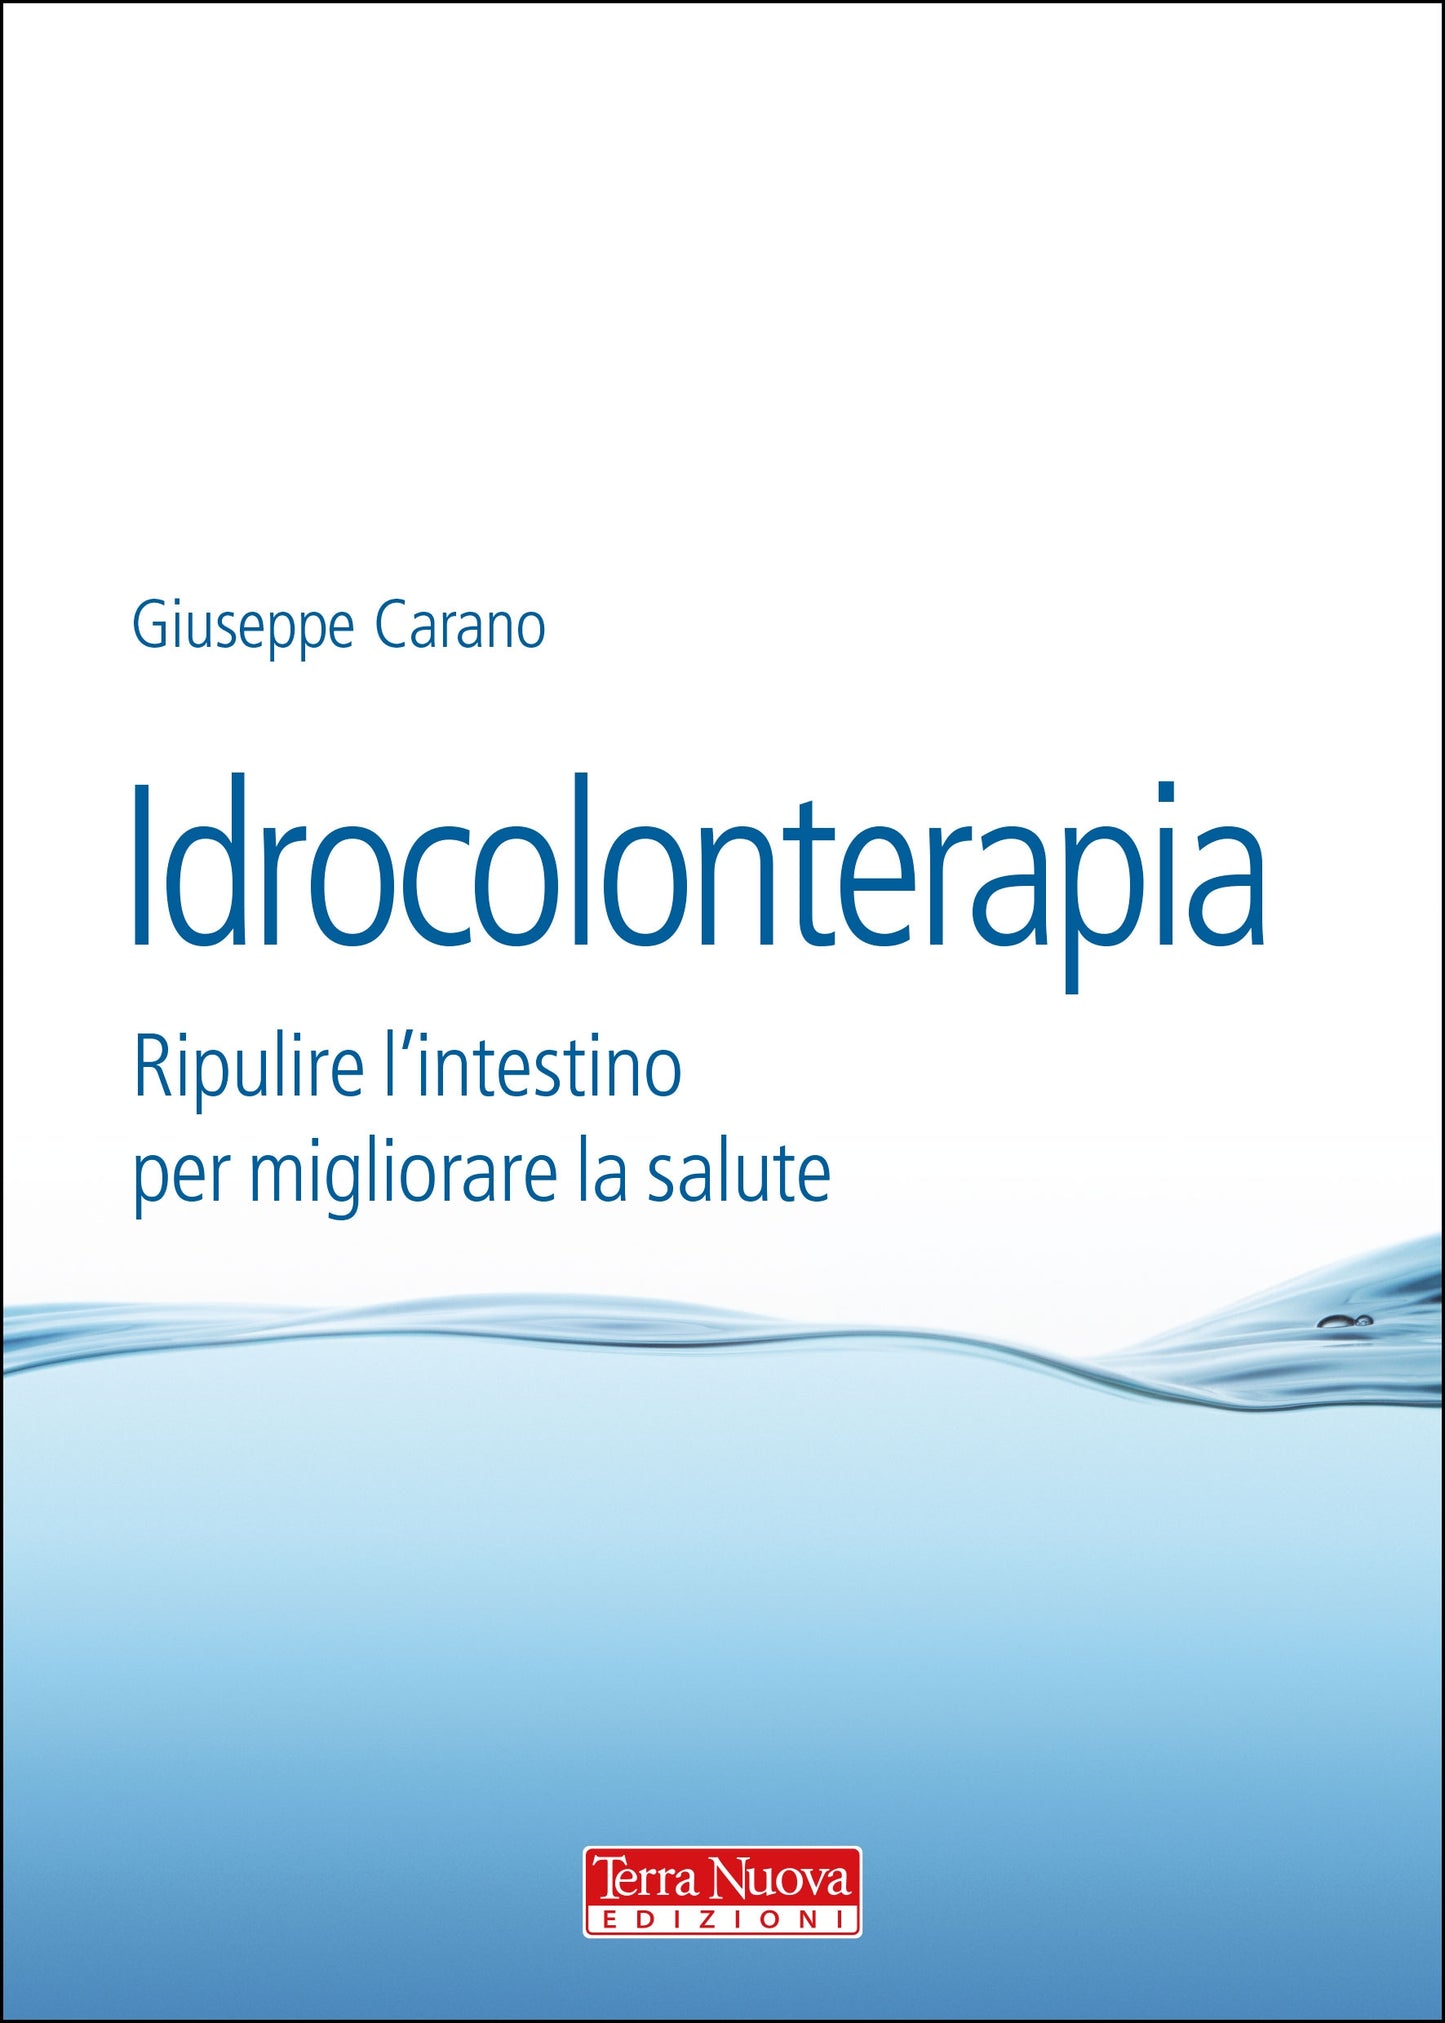 Idrocolonterapia Ripulire l'intestino per migliorare la salute - Giuseppe Carano